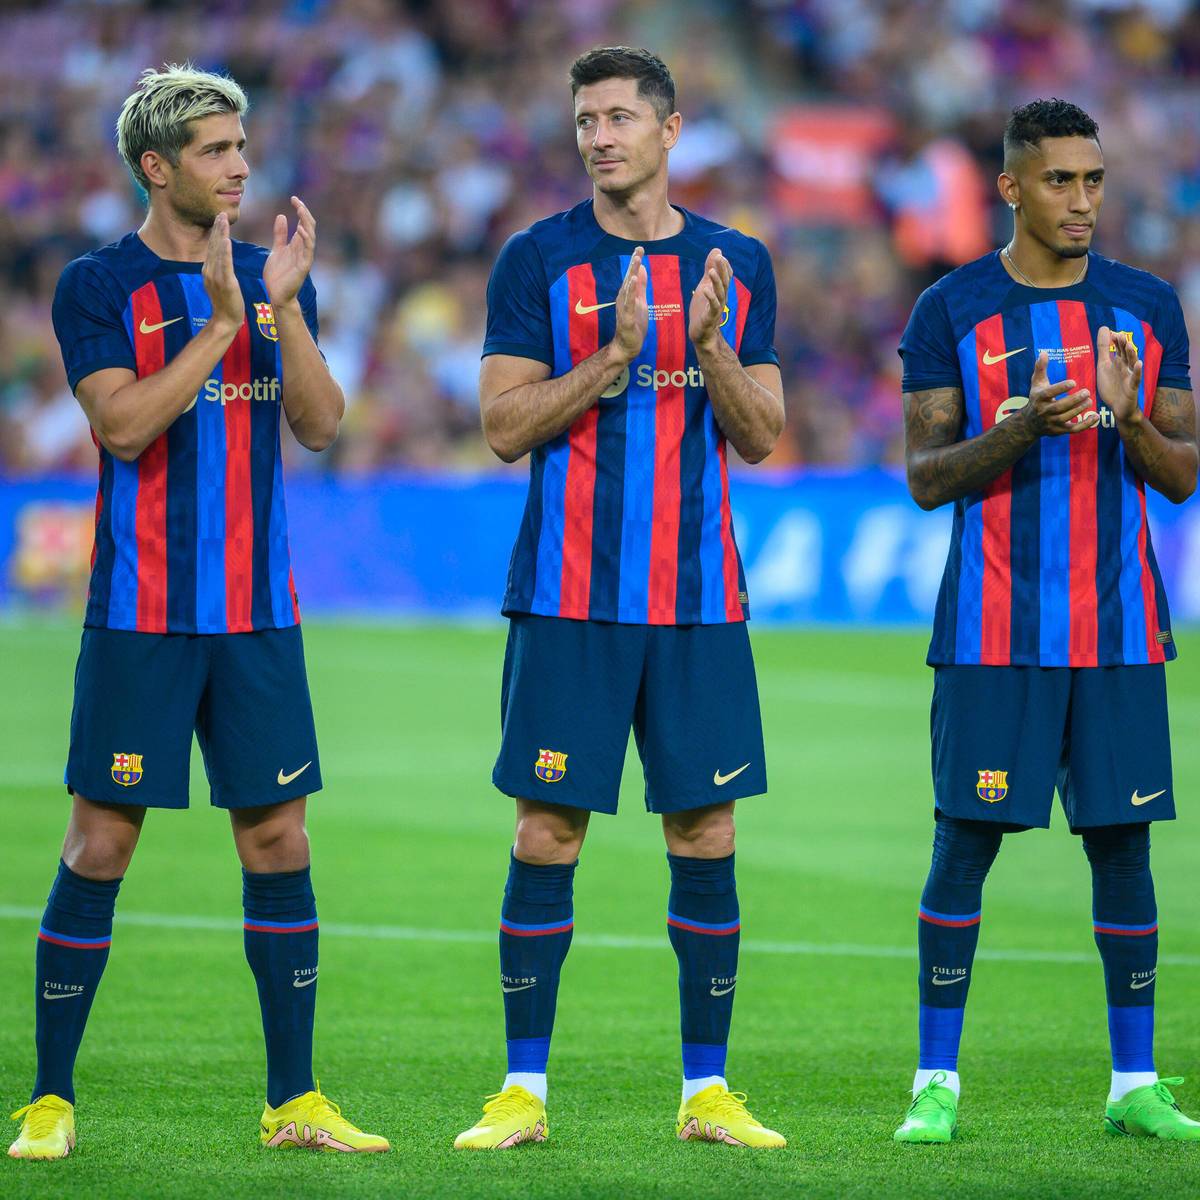 Der FC Barcelona rüstet den Kader mit Top-Stars auf, obwohl der Verein hochverschuldet ist. Das sorgt für Kritik. Ein Ex-Profi macht Barca nun schwere Vorwürfe.